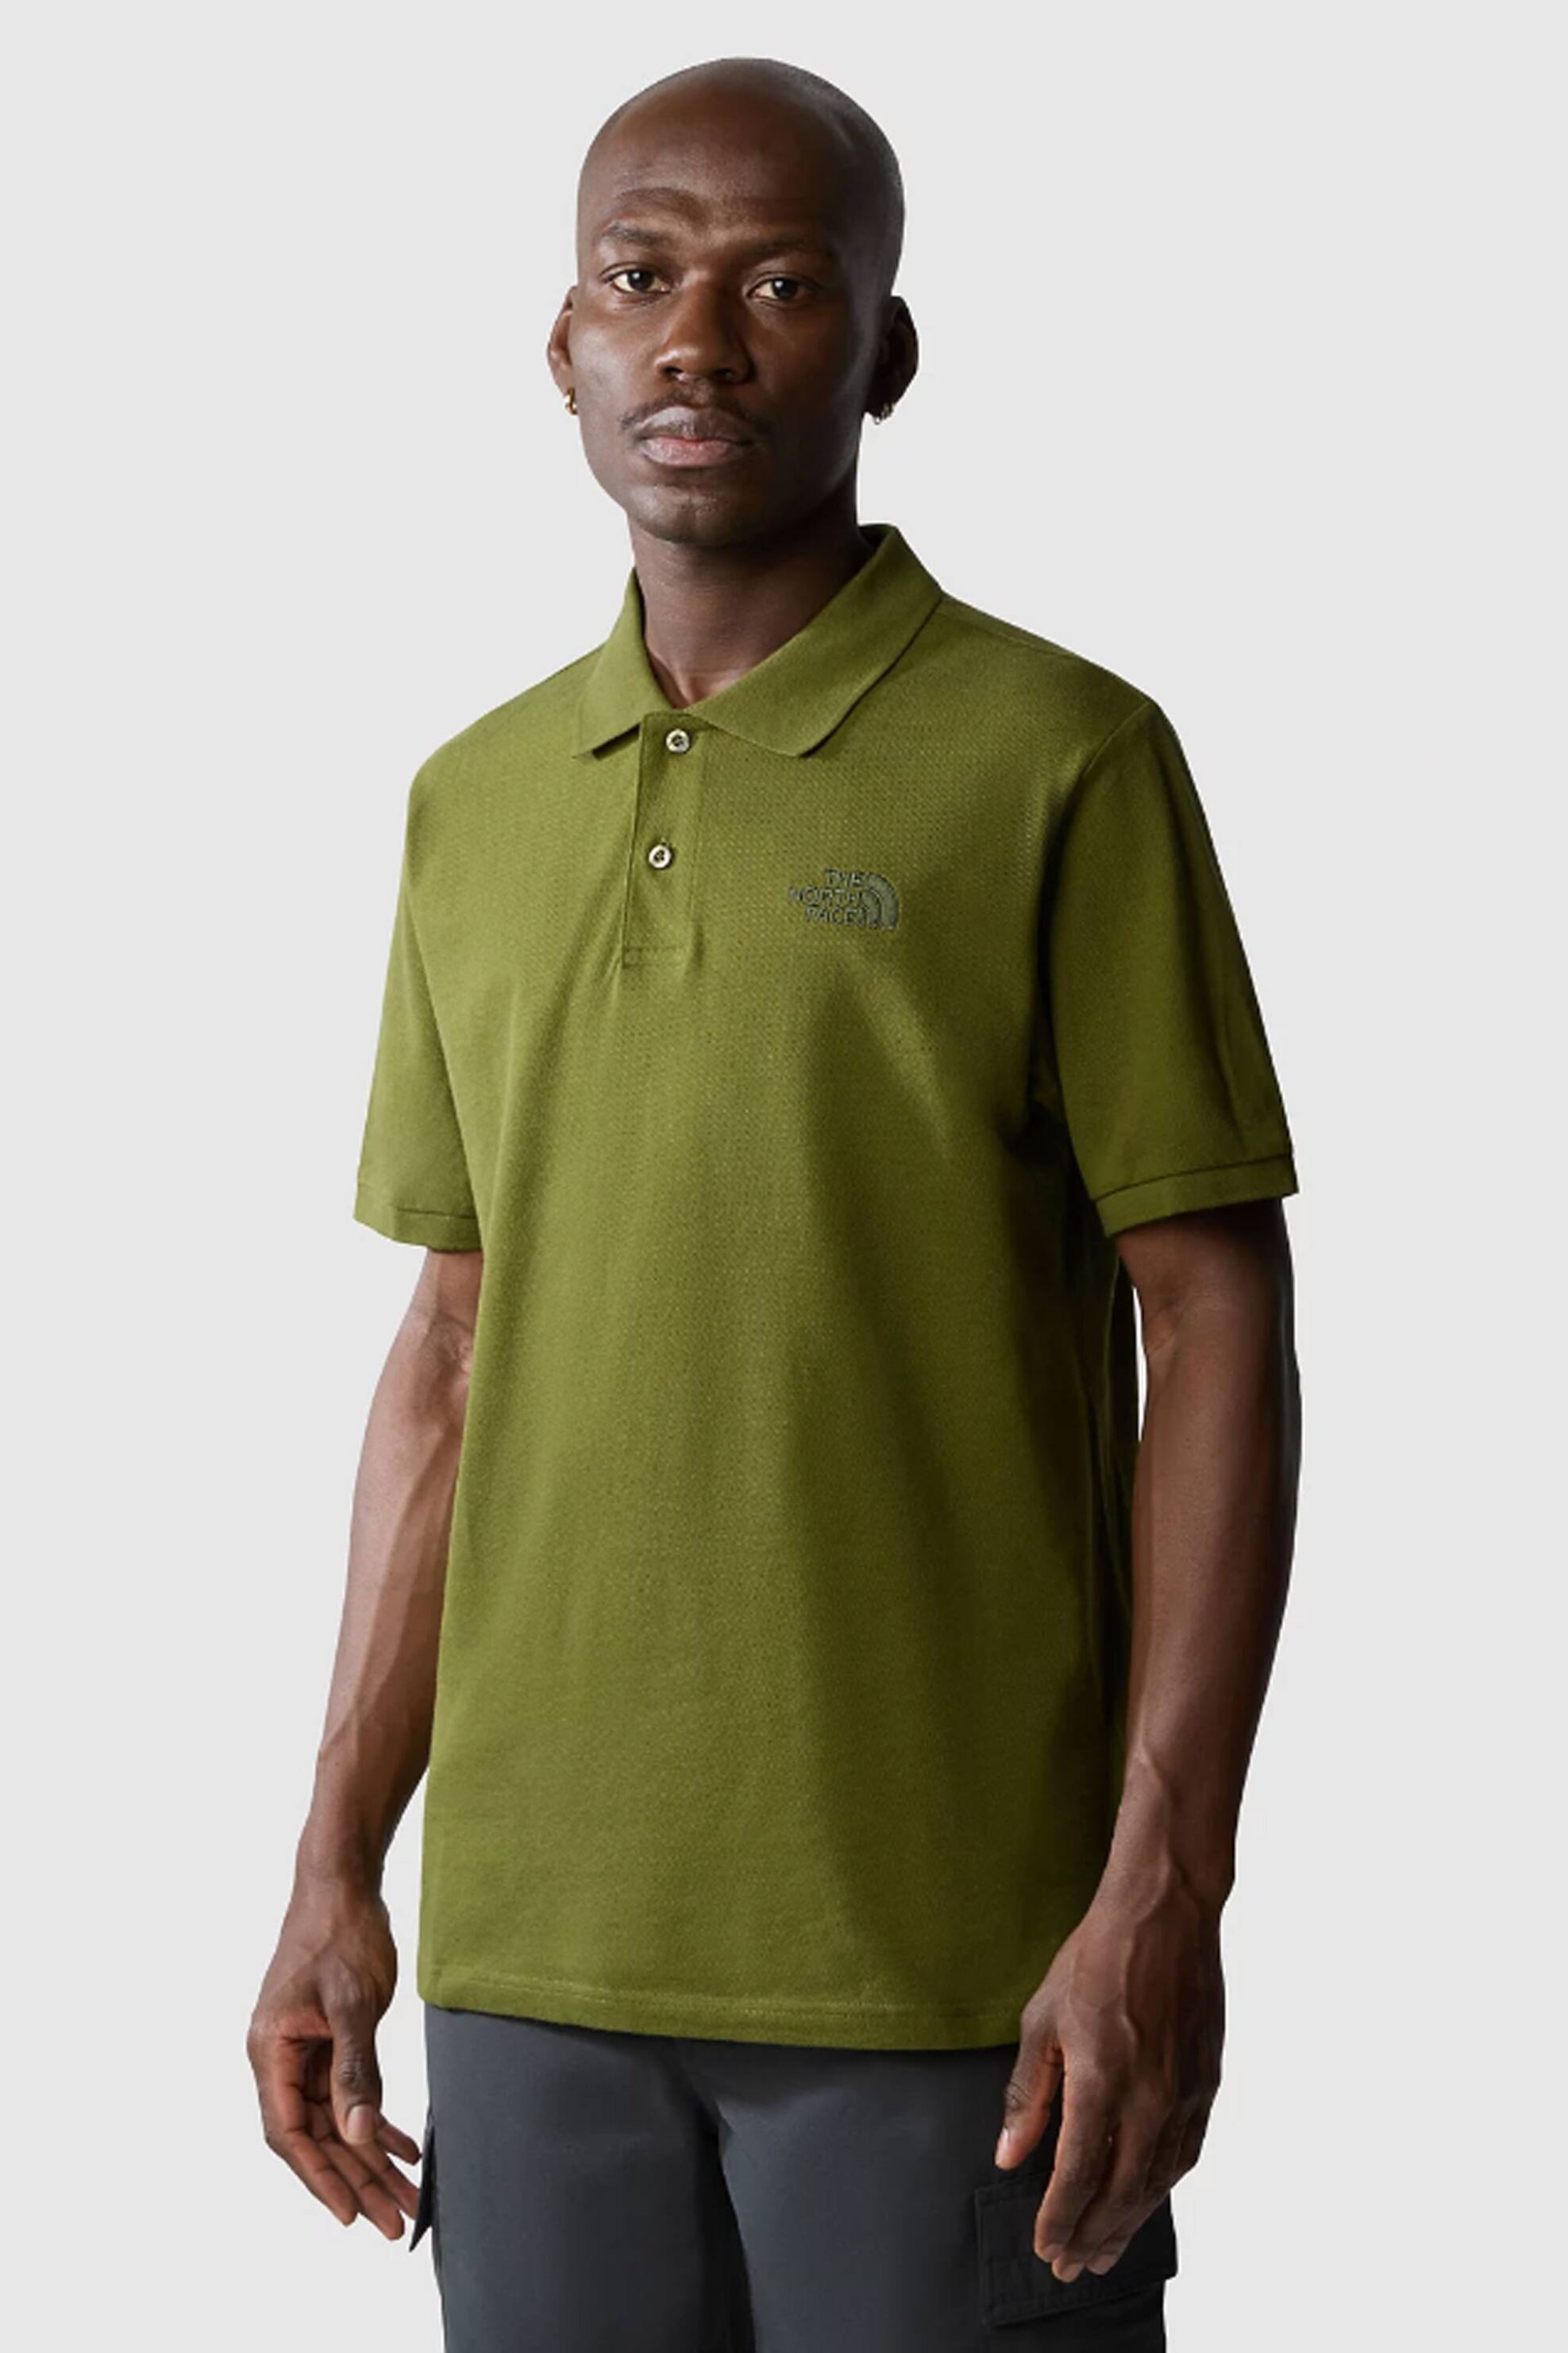 Ανδρική Μόδα > Ανδρικά Ρούχα > Ανδρικές Μπλούζες > Ανδρικές Μπλούζες Πολο The North Face ανδρική πόλο μπλούζα μονόχρωμη με κεντημένο tone-on-tone λογότυπο - NF00CG71PIB1 Λαδί